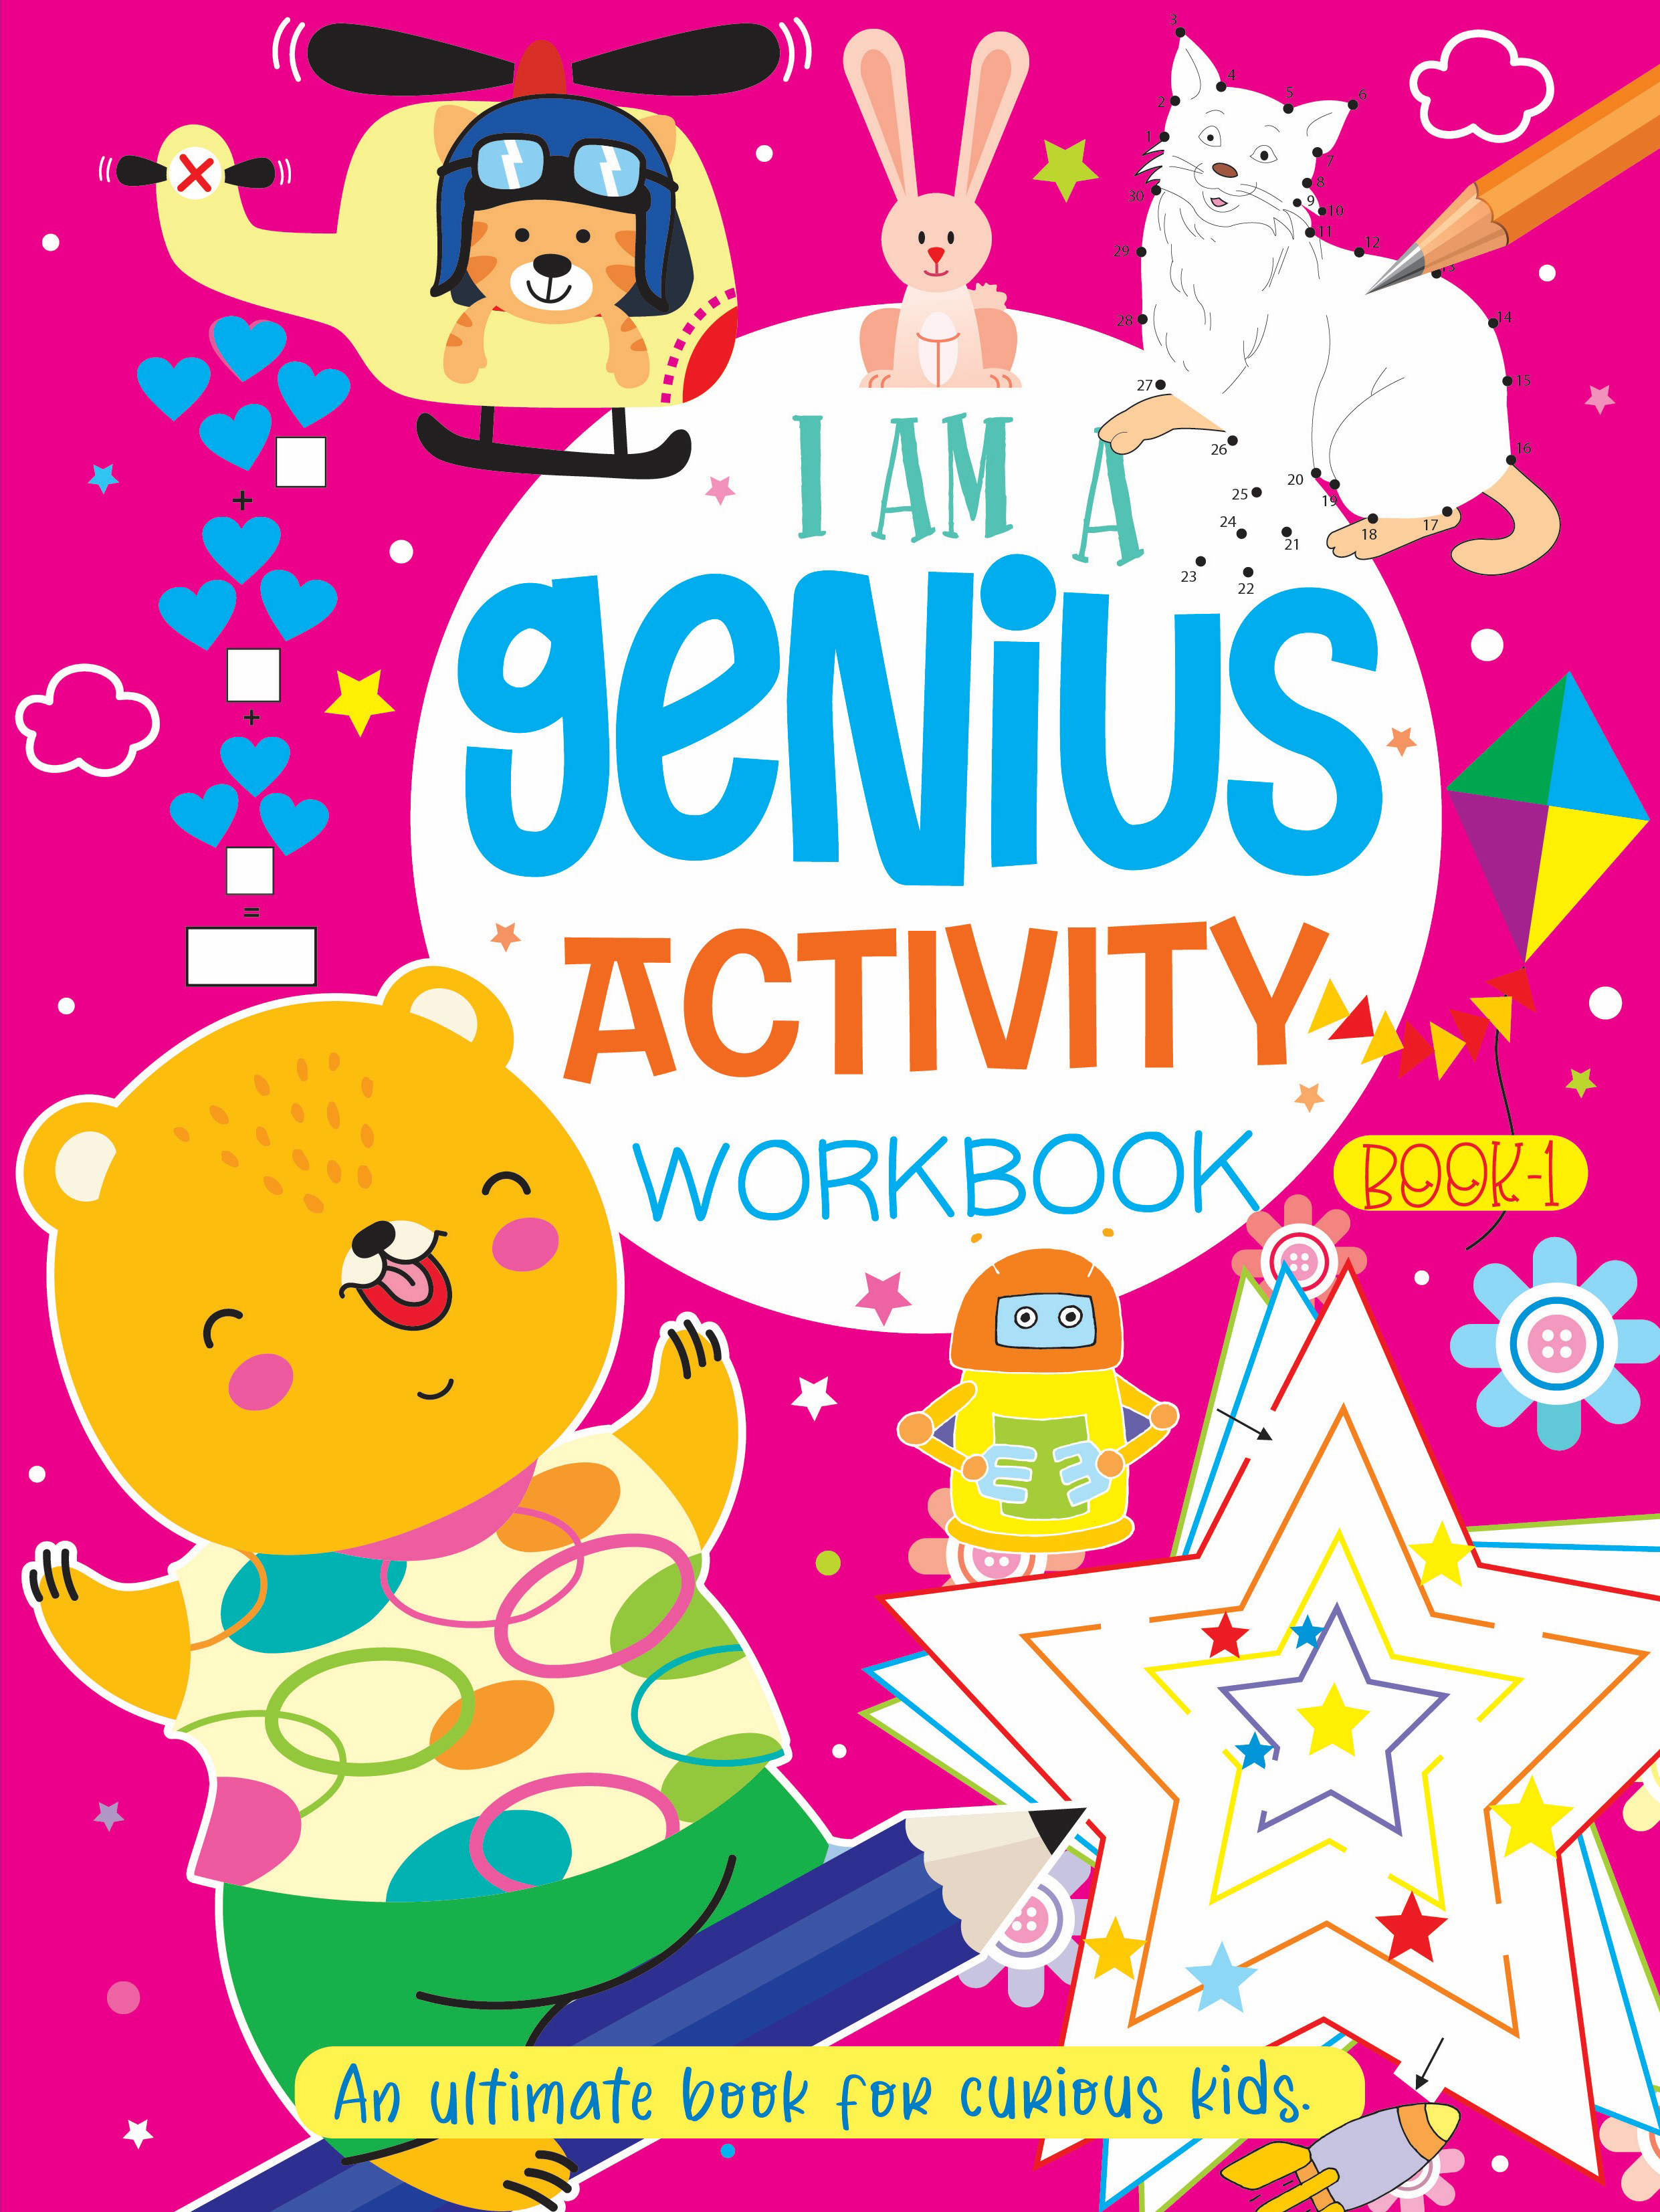 500 Activities Book 500 Genious workbook activity